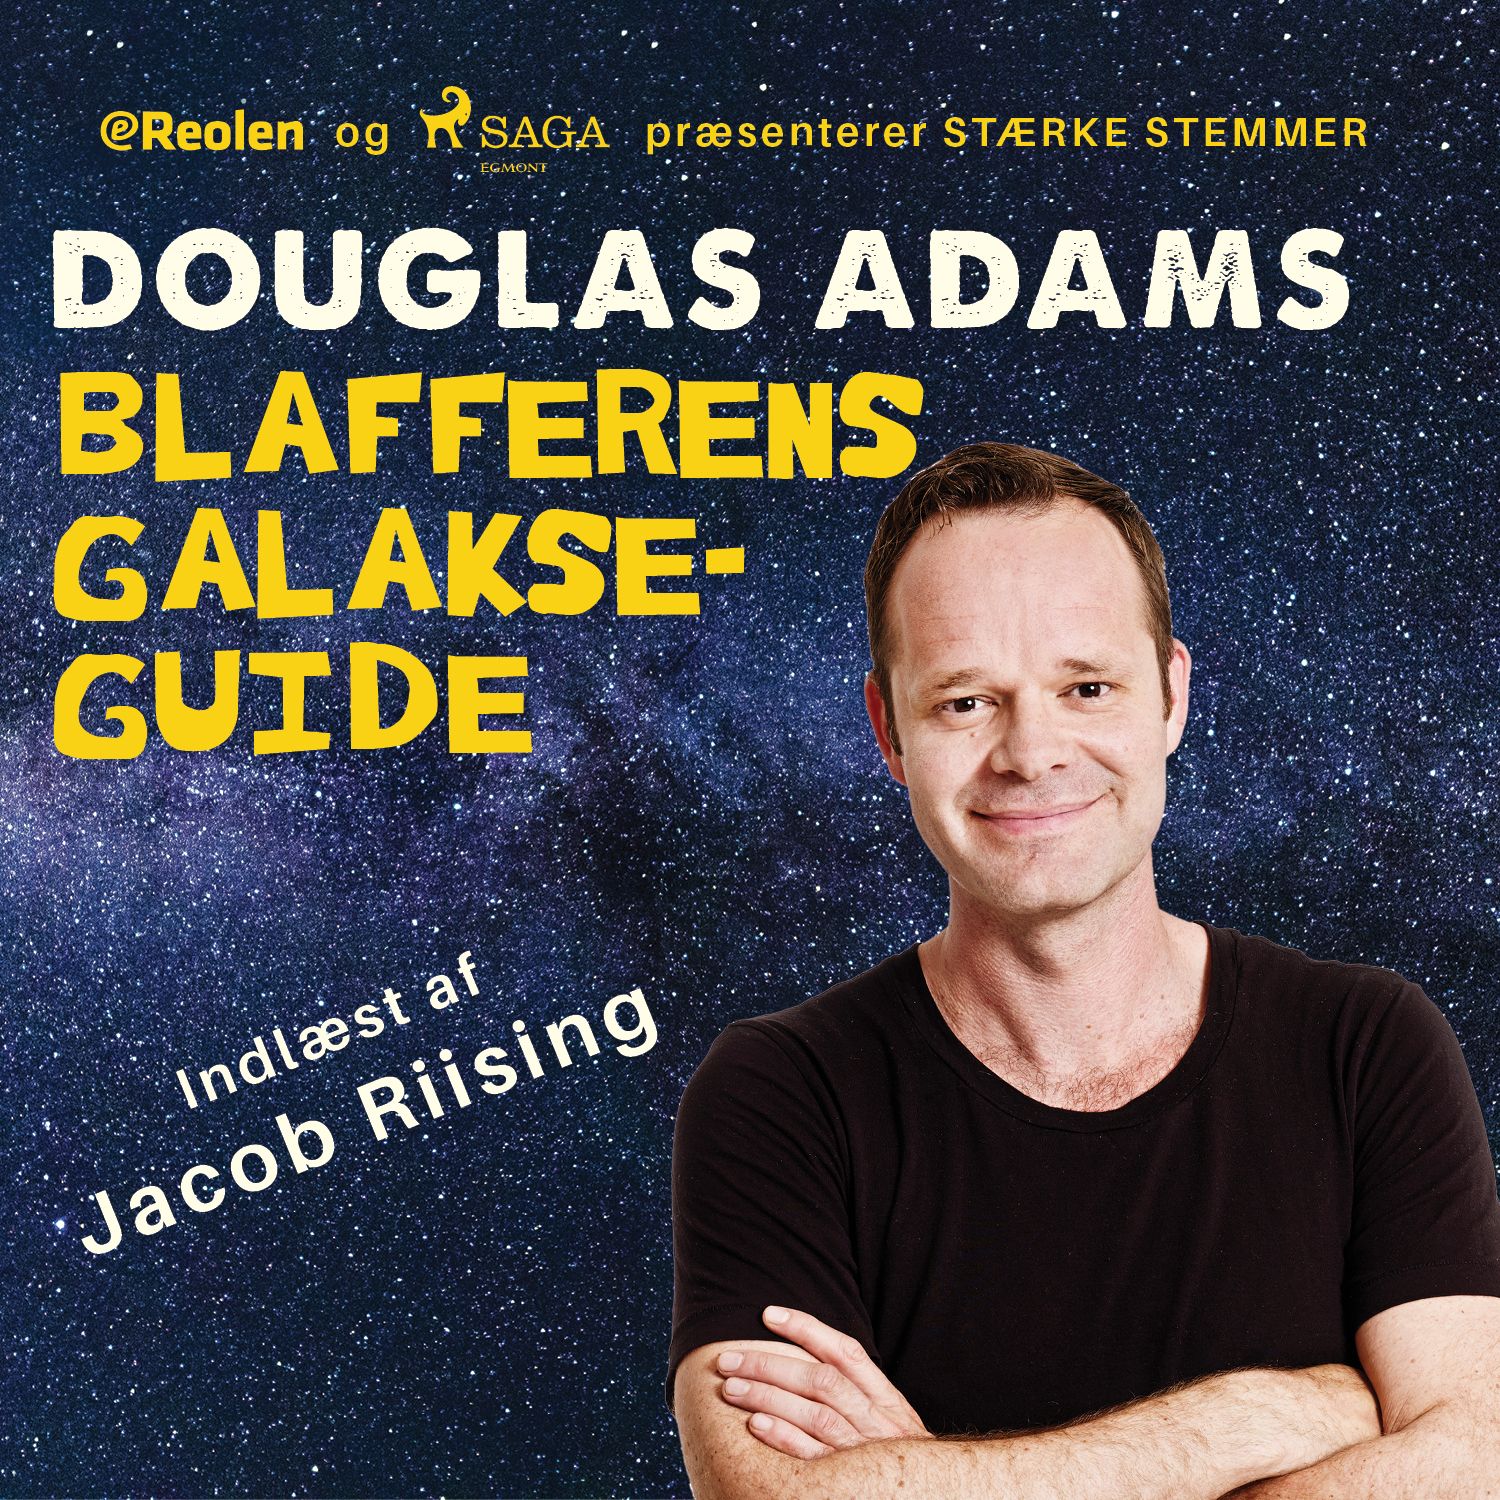 Blafferens galakseguide, ljudbok av Douglas Adams